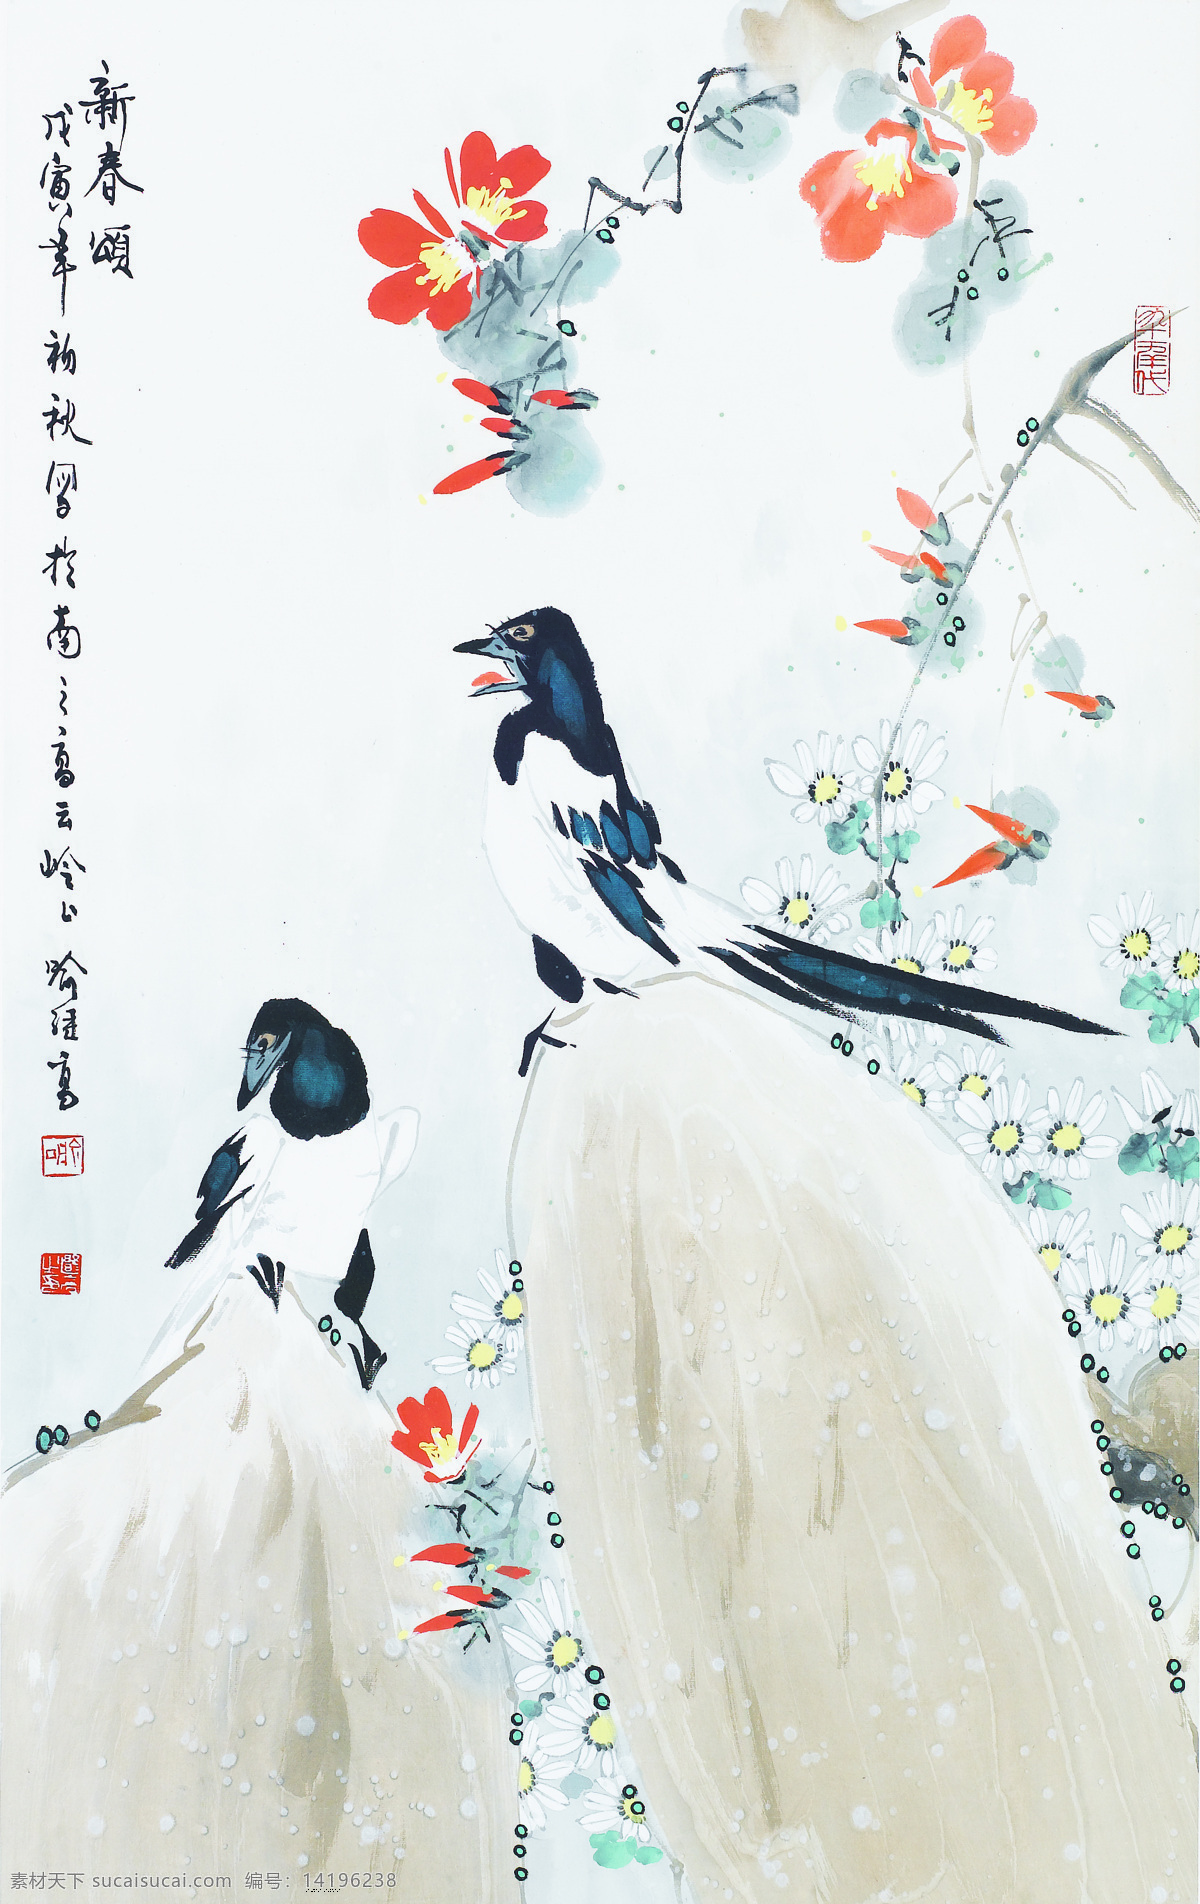 新春颂 喻继高作品 中国花鸟画家 两只喜鹊 报春 中国古代画 中国古画 绘画书法 文化艺术